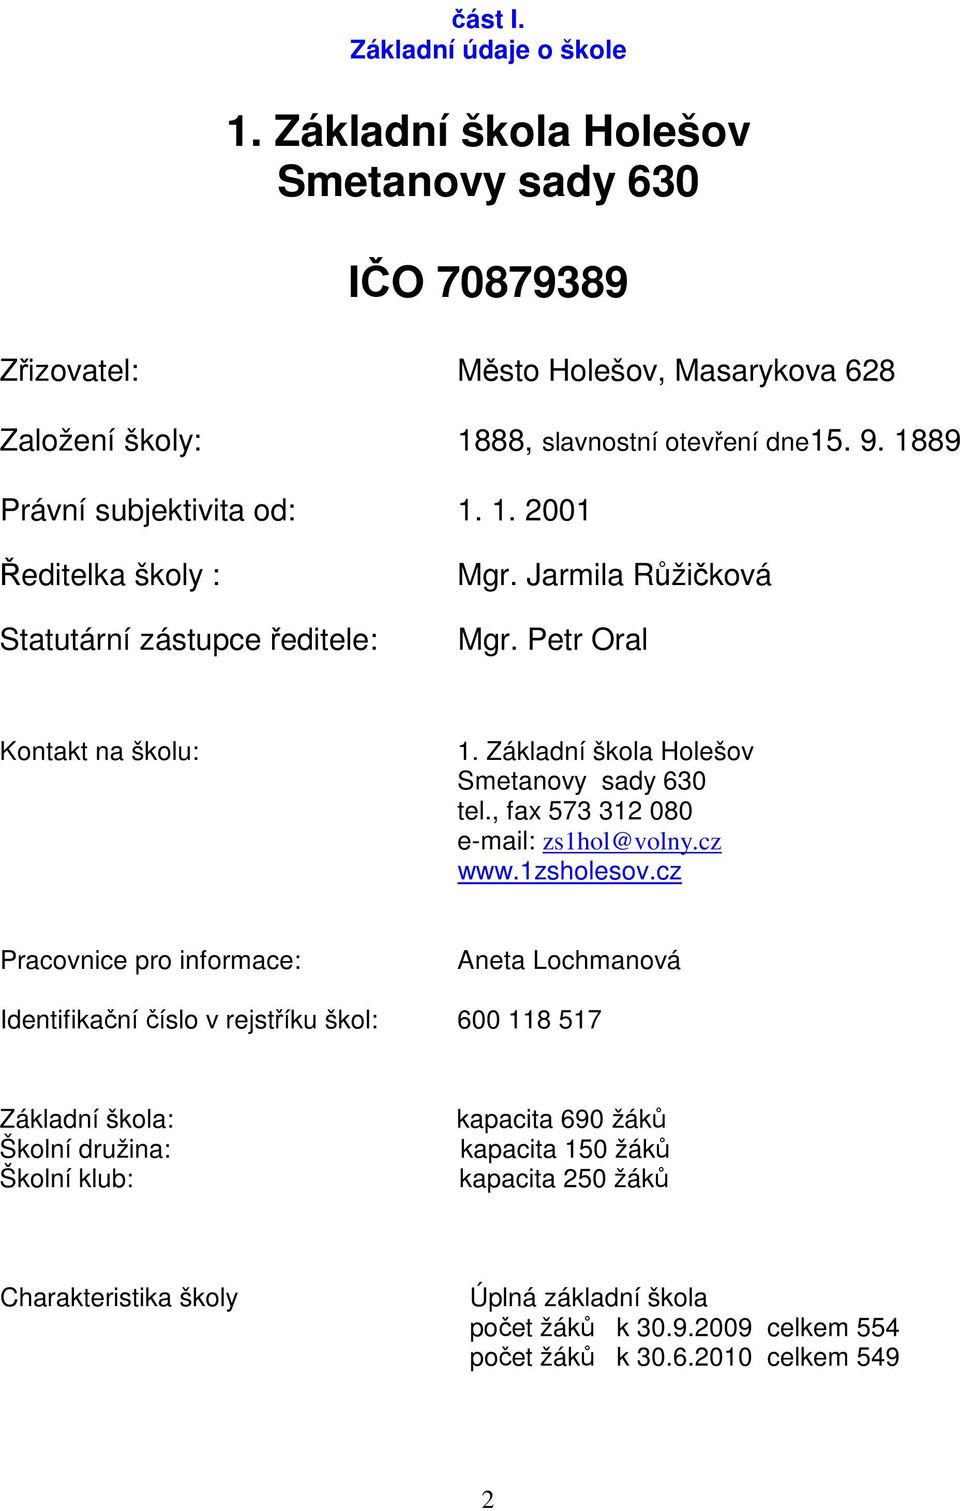 Základní škola Holešov Smetanovy sady 630 tel., fax 573 312 080 e-mail: zs1hol@volny.cz www.1zsholesov.